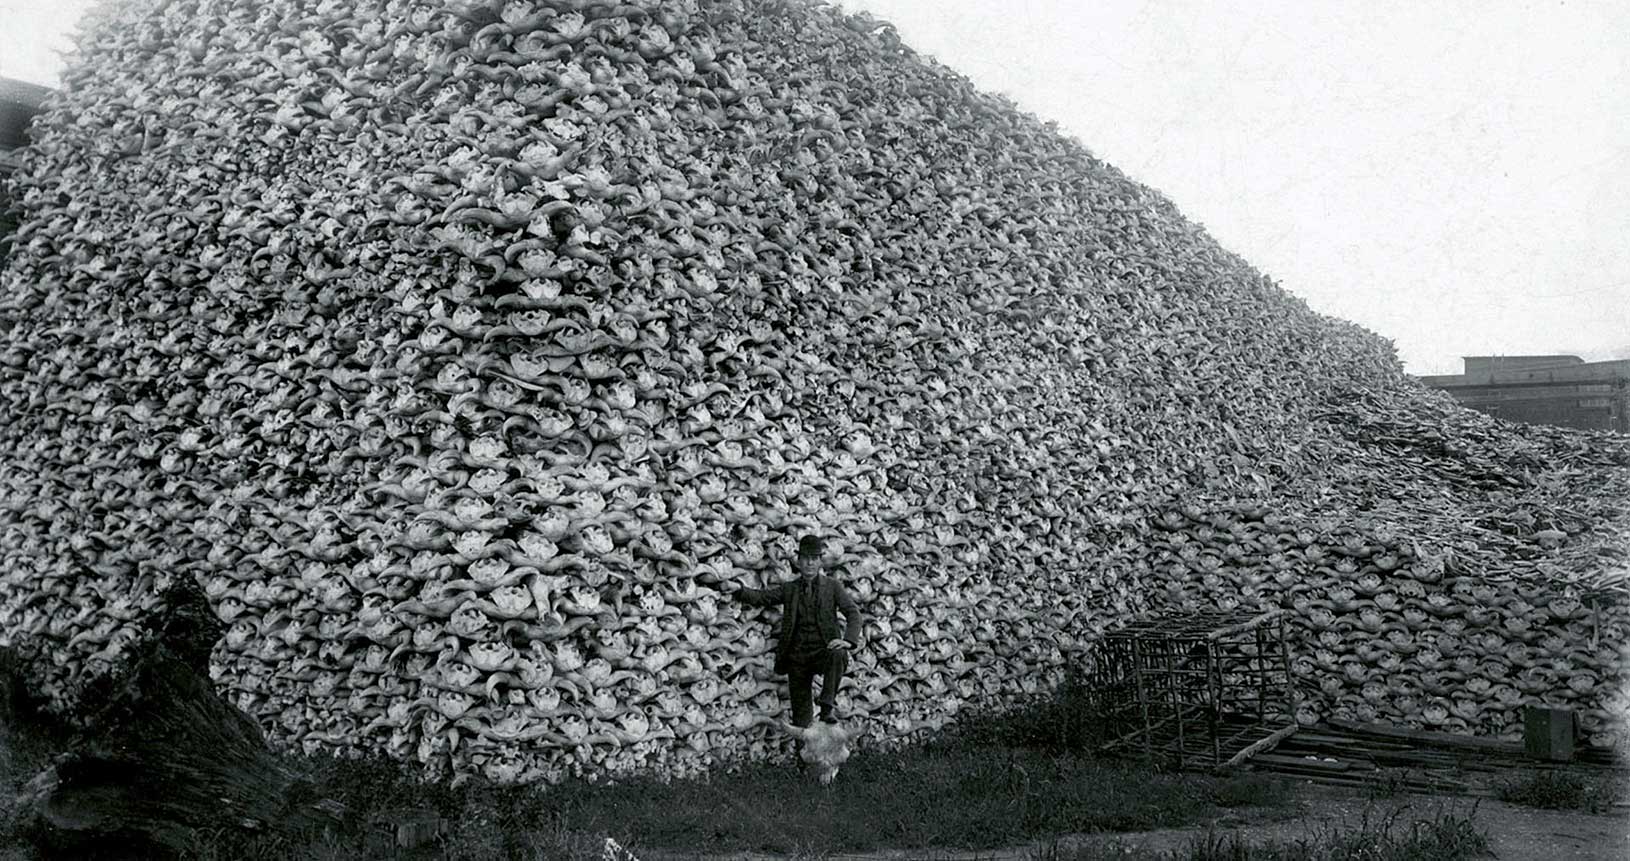 Berg von Bison-Schädeln in einem Werk zur Düngerherstellung in Detroit (USA), um 1892 (Public Domain)